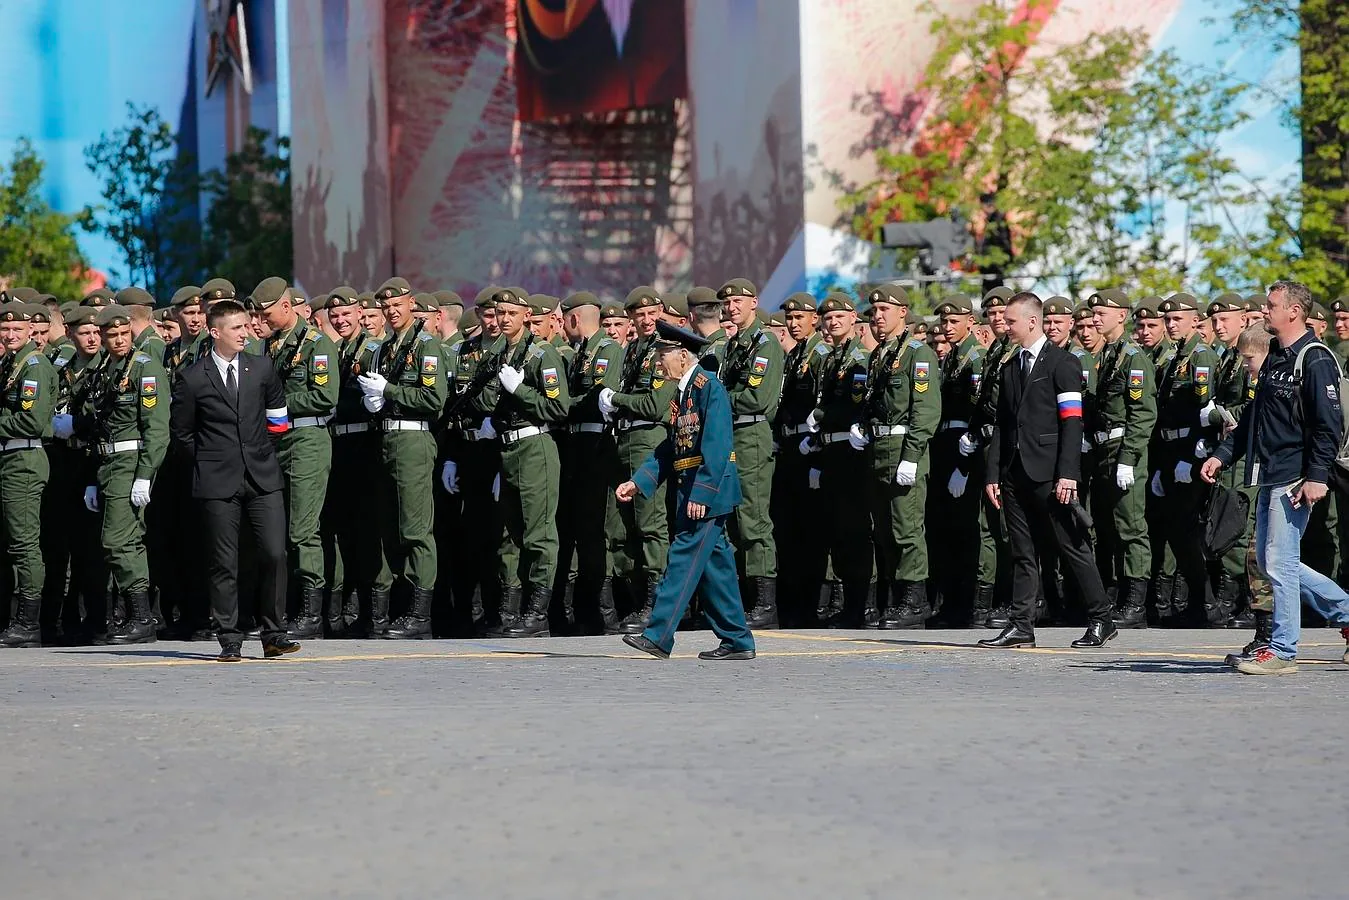 Veteranos y soldados participan en el desfile del Día de la Victoria en la Plaza Roja de Moscú